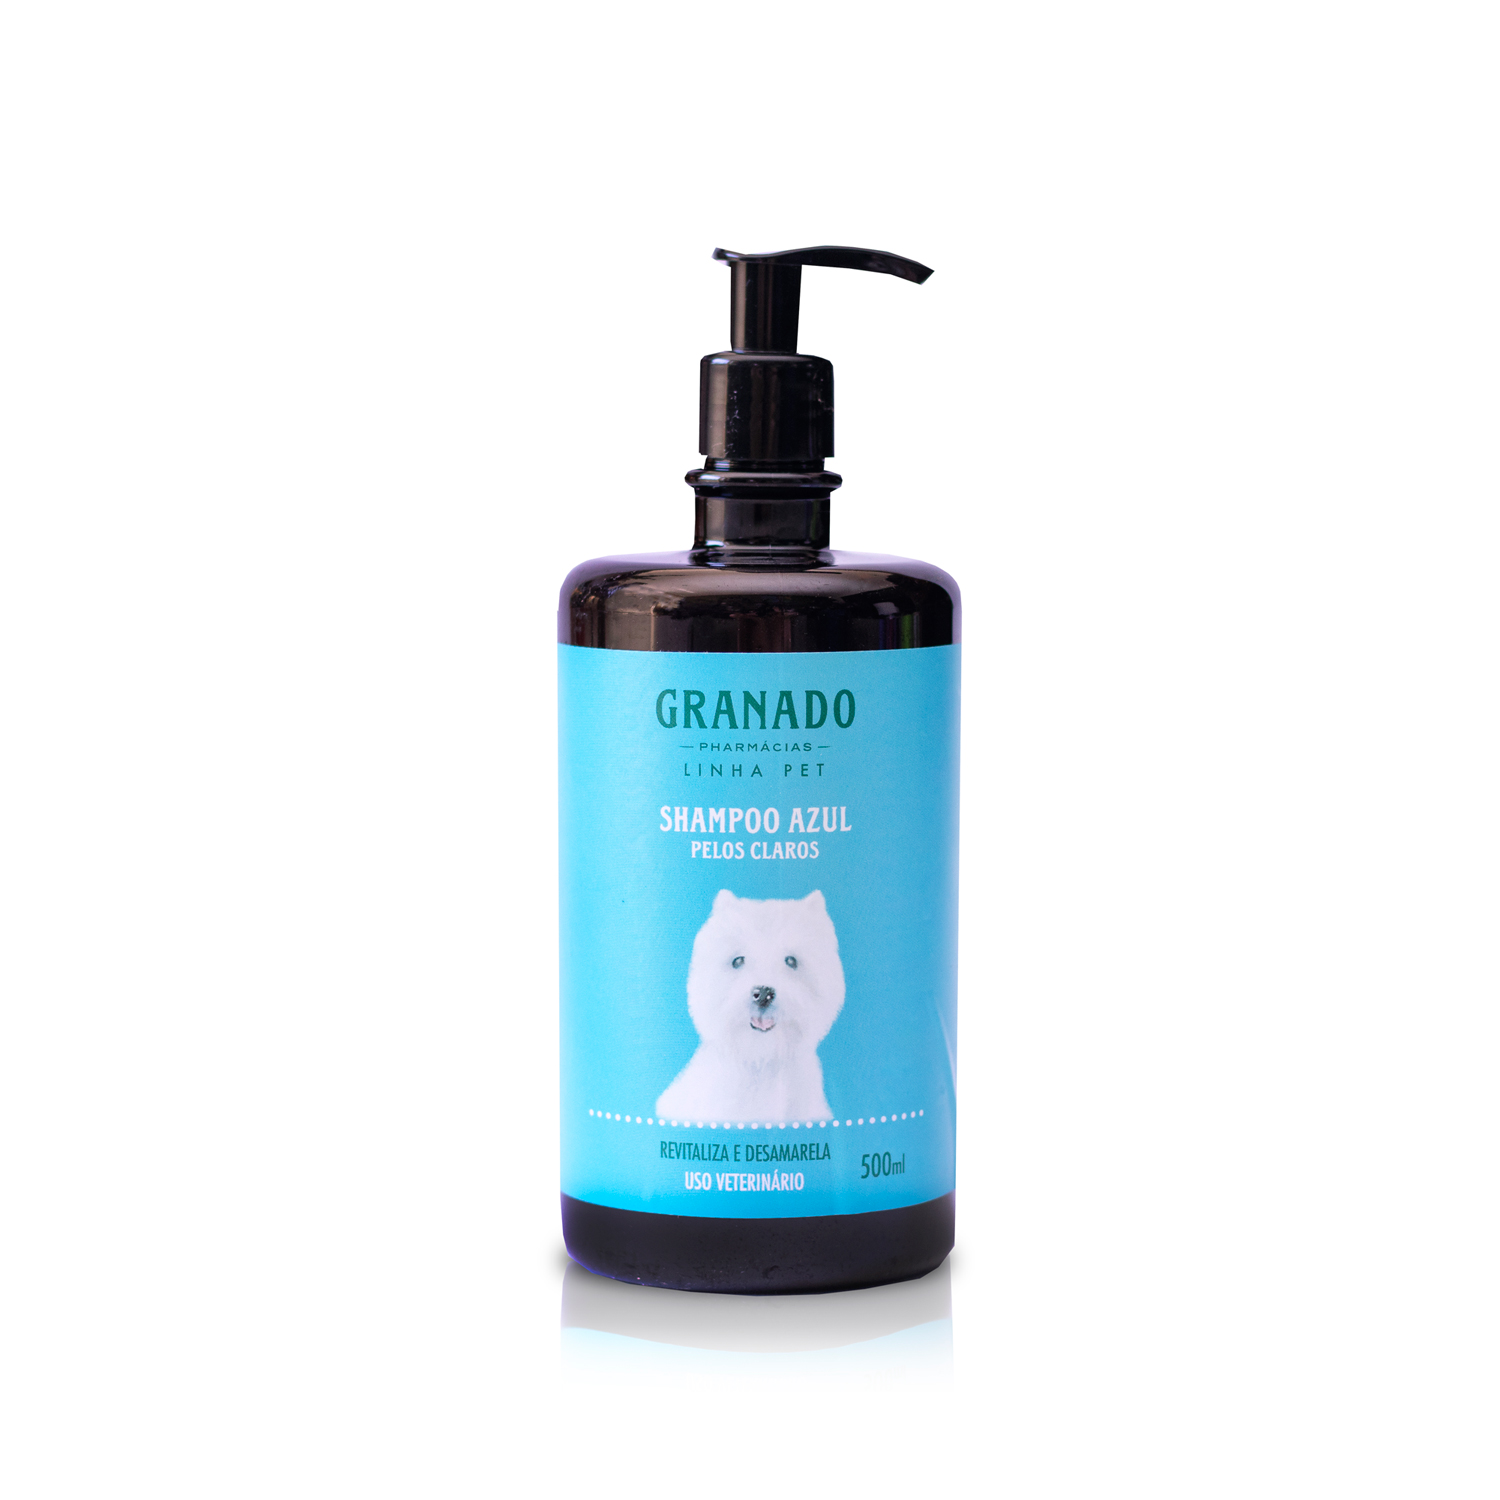 Kit Shampoo Pelos Claros e Deo Colonia Granado Pet